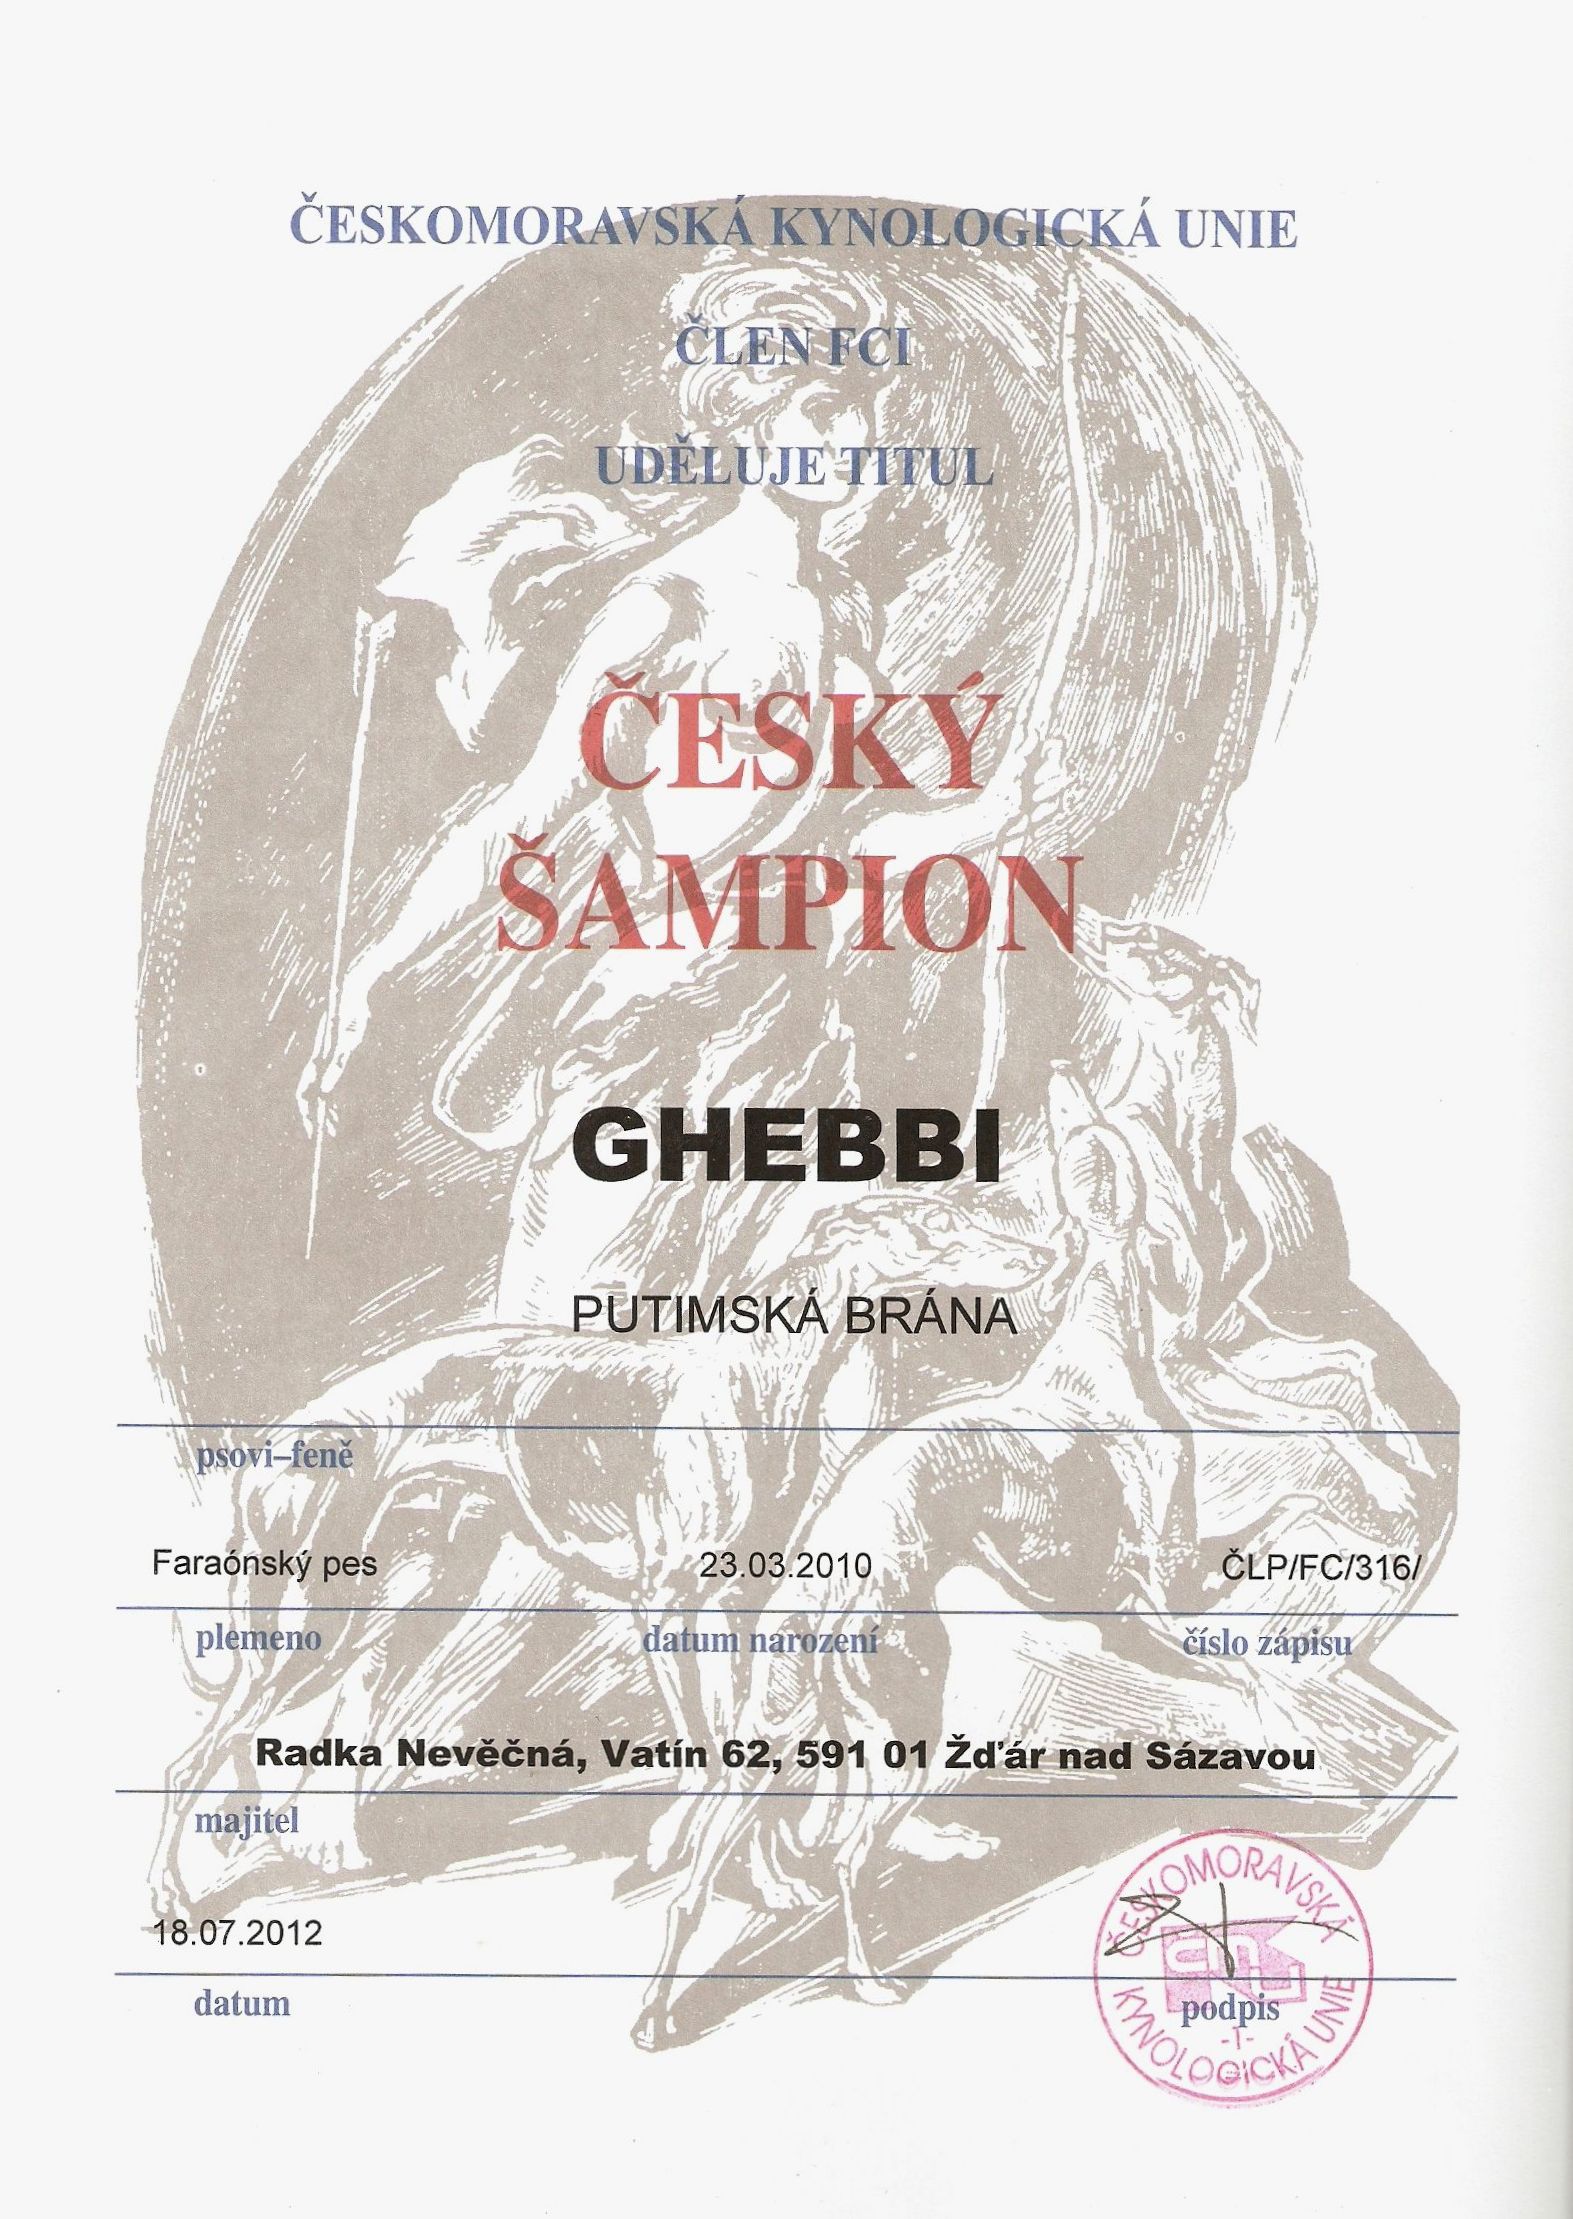 Ghebbi Putimská brána - Český šampion